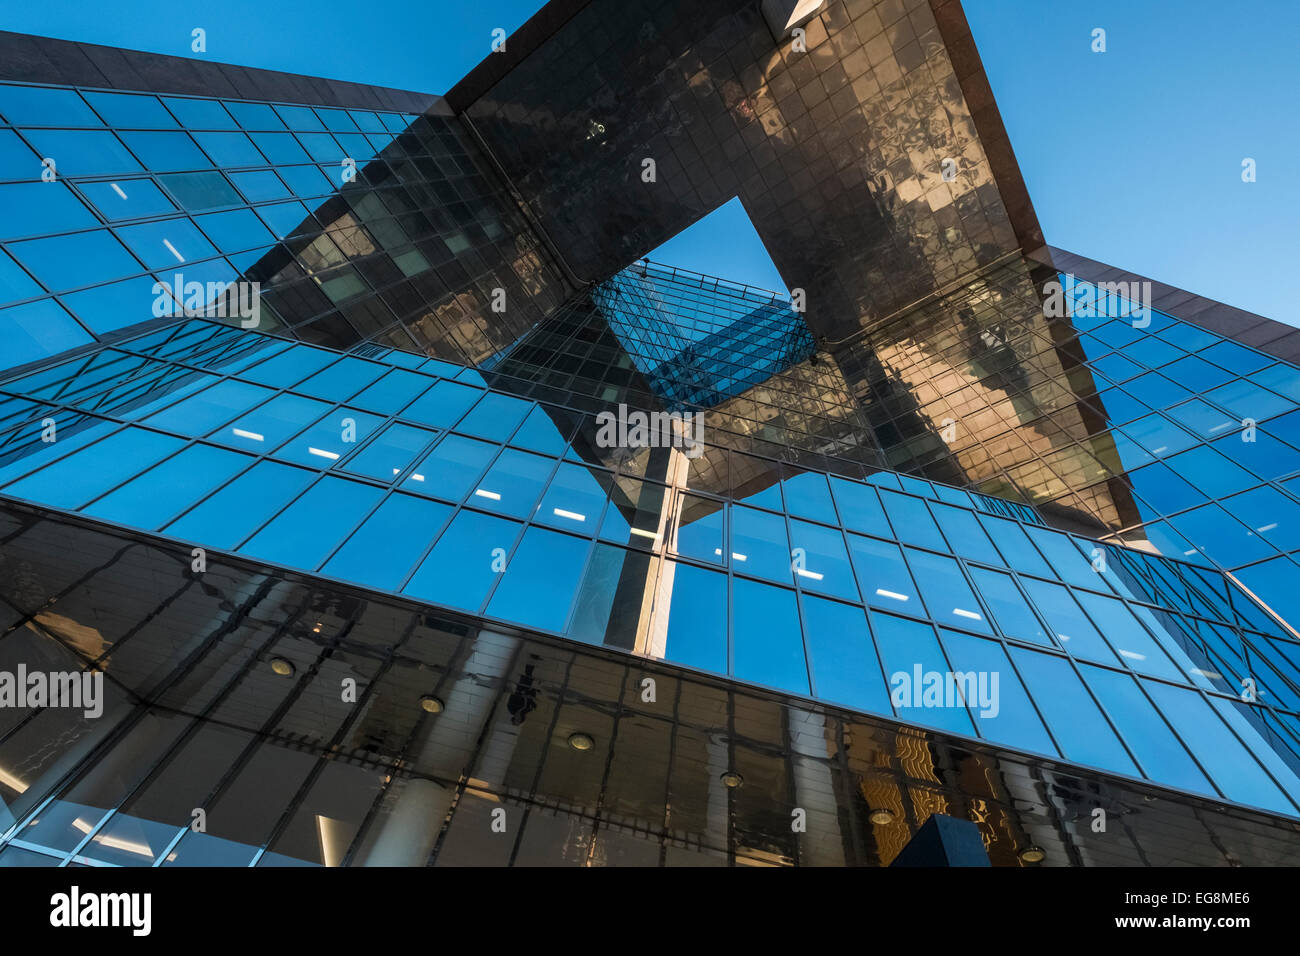 Punto di vista verticale di architettura moderna, 1 London Bridge building, Southwark, London, SE1 9BG, REGNO UNITO Foto Stock